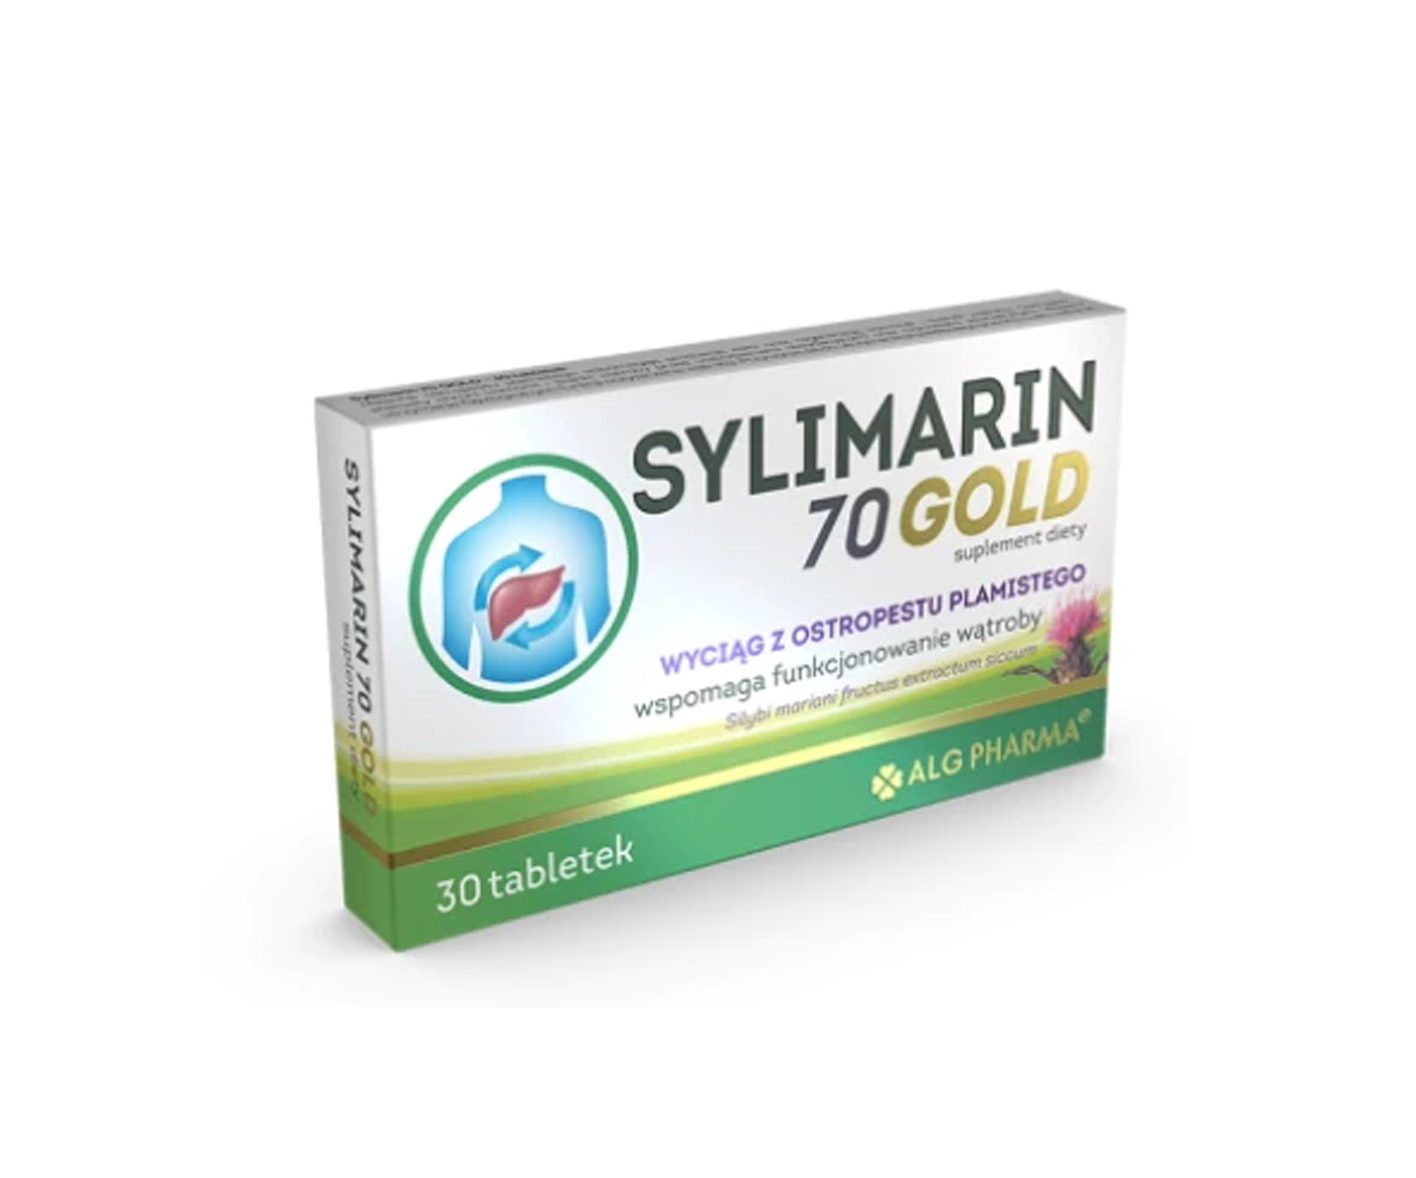 Sylimarin, 70 Gold, tabletki na wątrobę